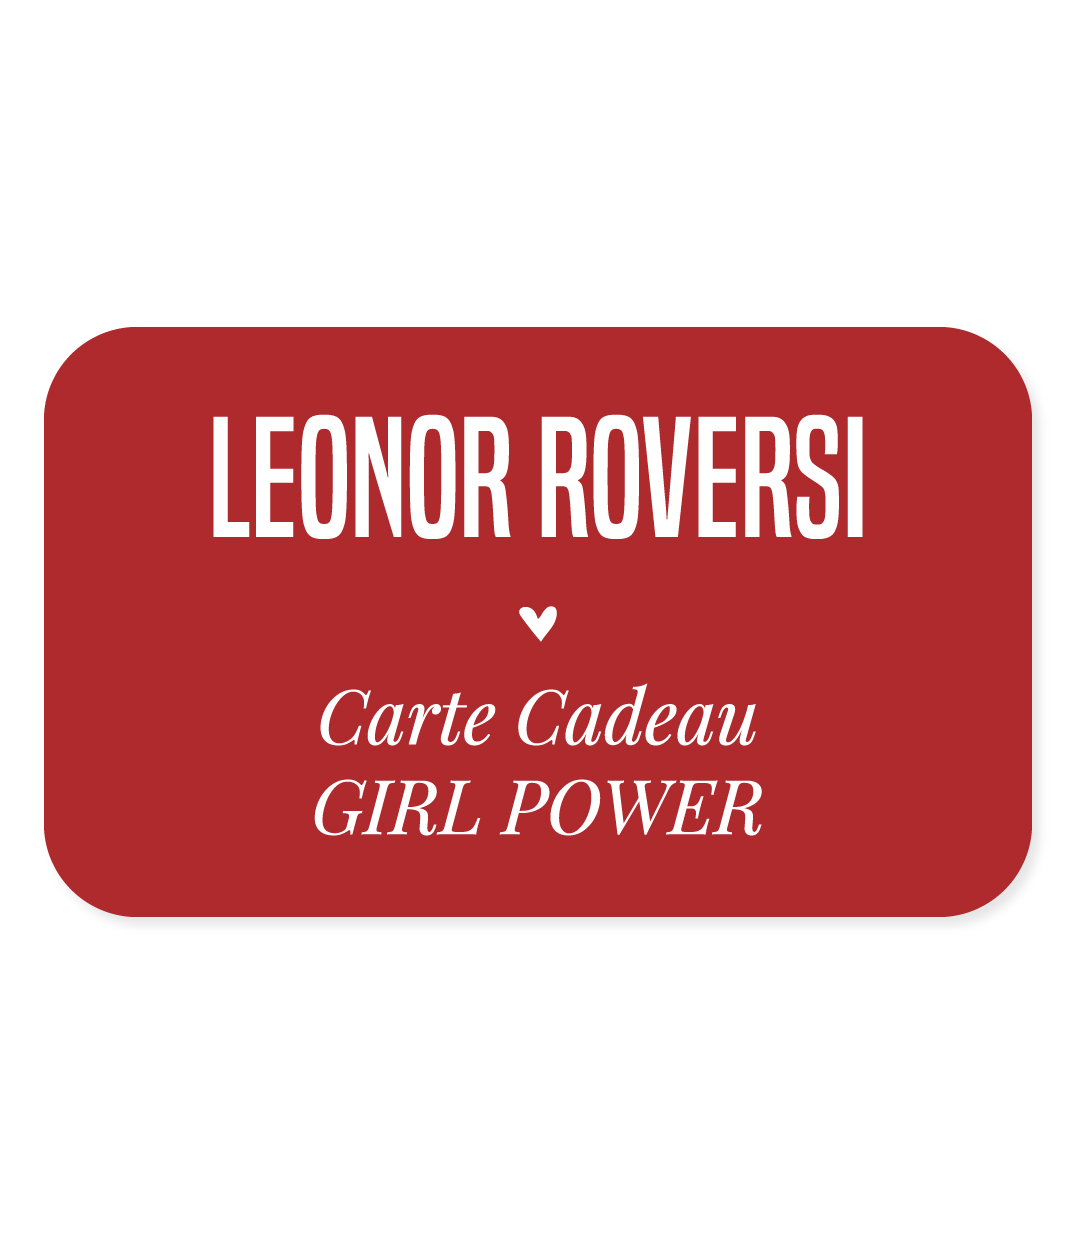 carte cadeau girlpower leonor roversi